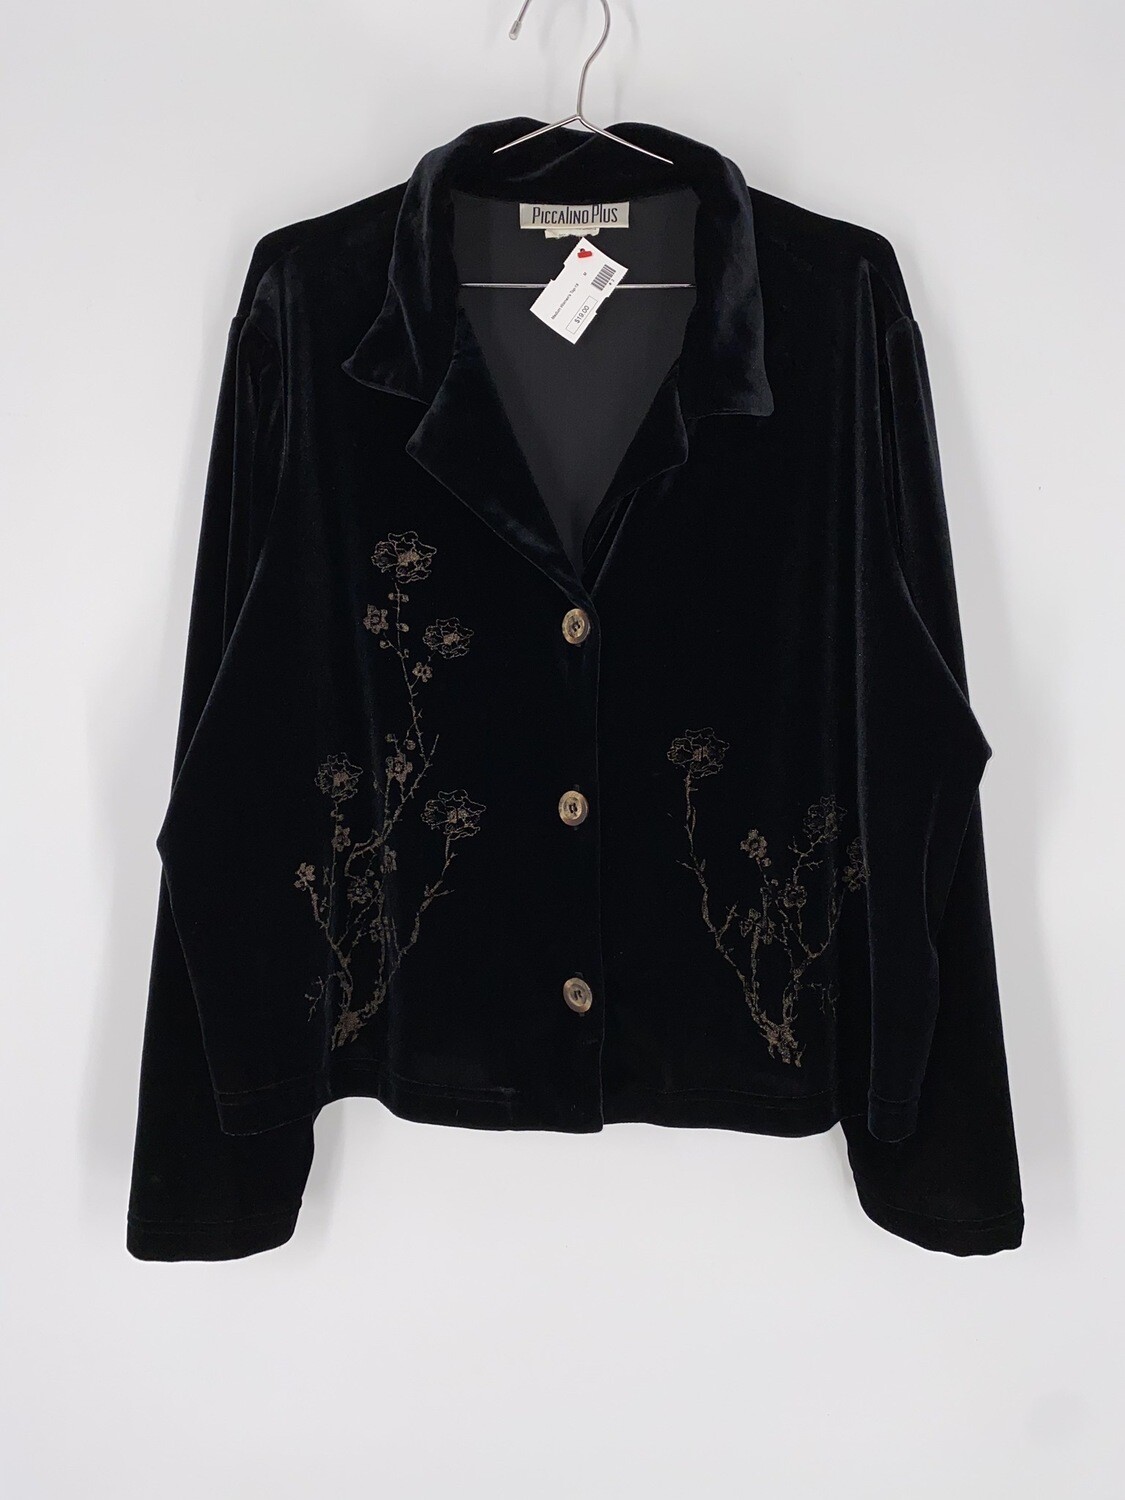 Piccalino Plus Black Velvet Floral Design Button Up Top Size M